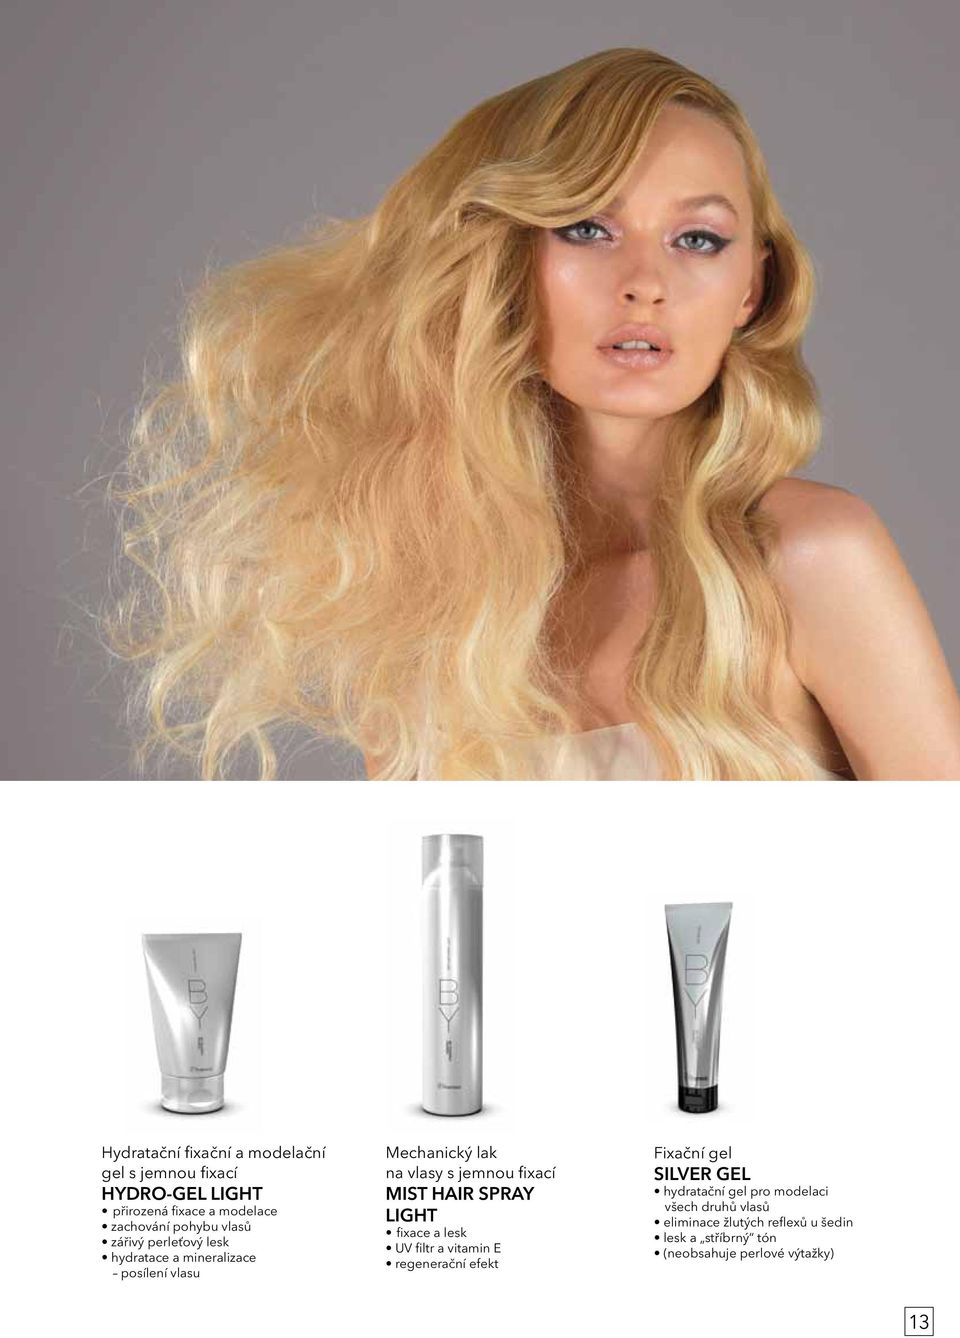 HAIR SPRAY LIGHT fixace a lesk UV filtr a vitamin E regenerační efekt Fixační gel SILVER GEL hydratační gel pro